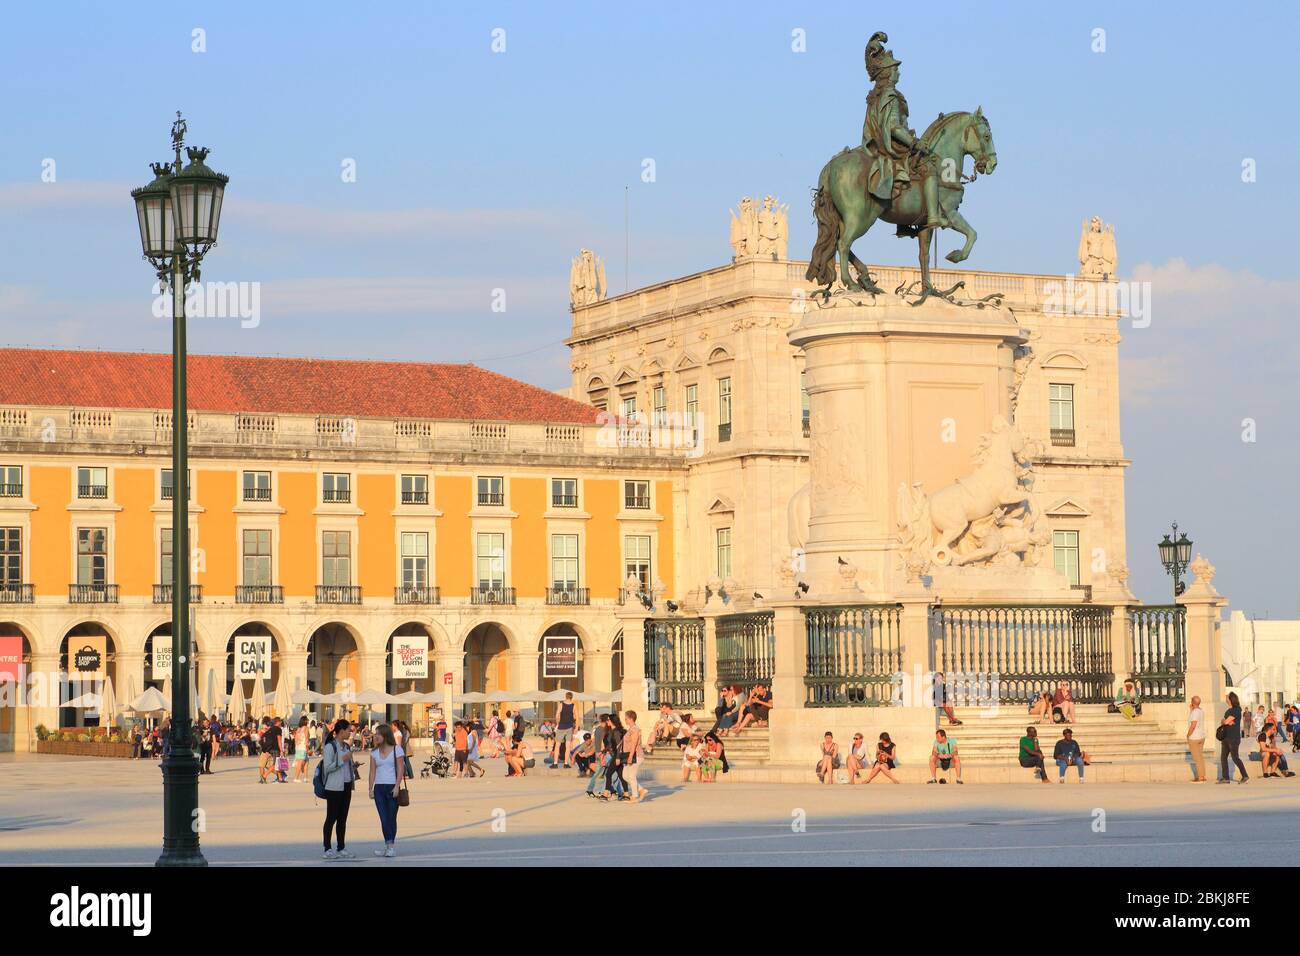 Portugal, Lisbon, Baixa, Praça do Comércio (Commerce Square), equestrian statue of King Joseph I designed by Joaquim Machado de Castro and inaugurated in 1775 Stock Photo